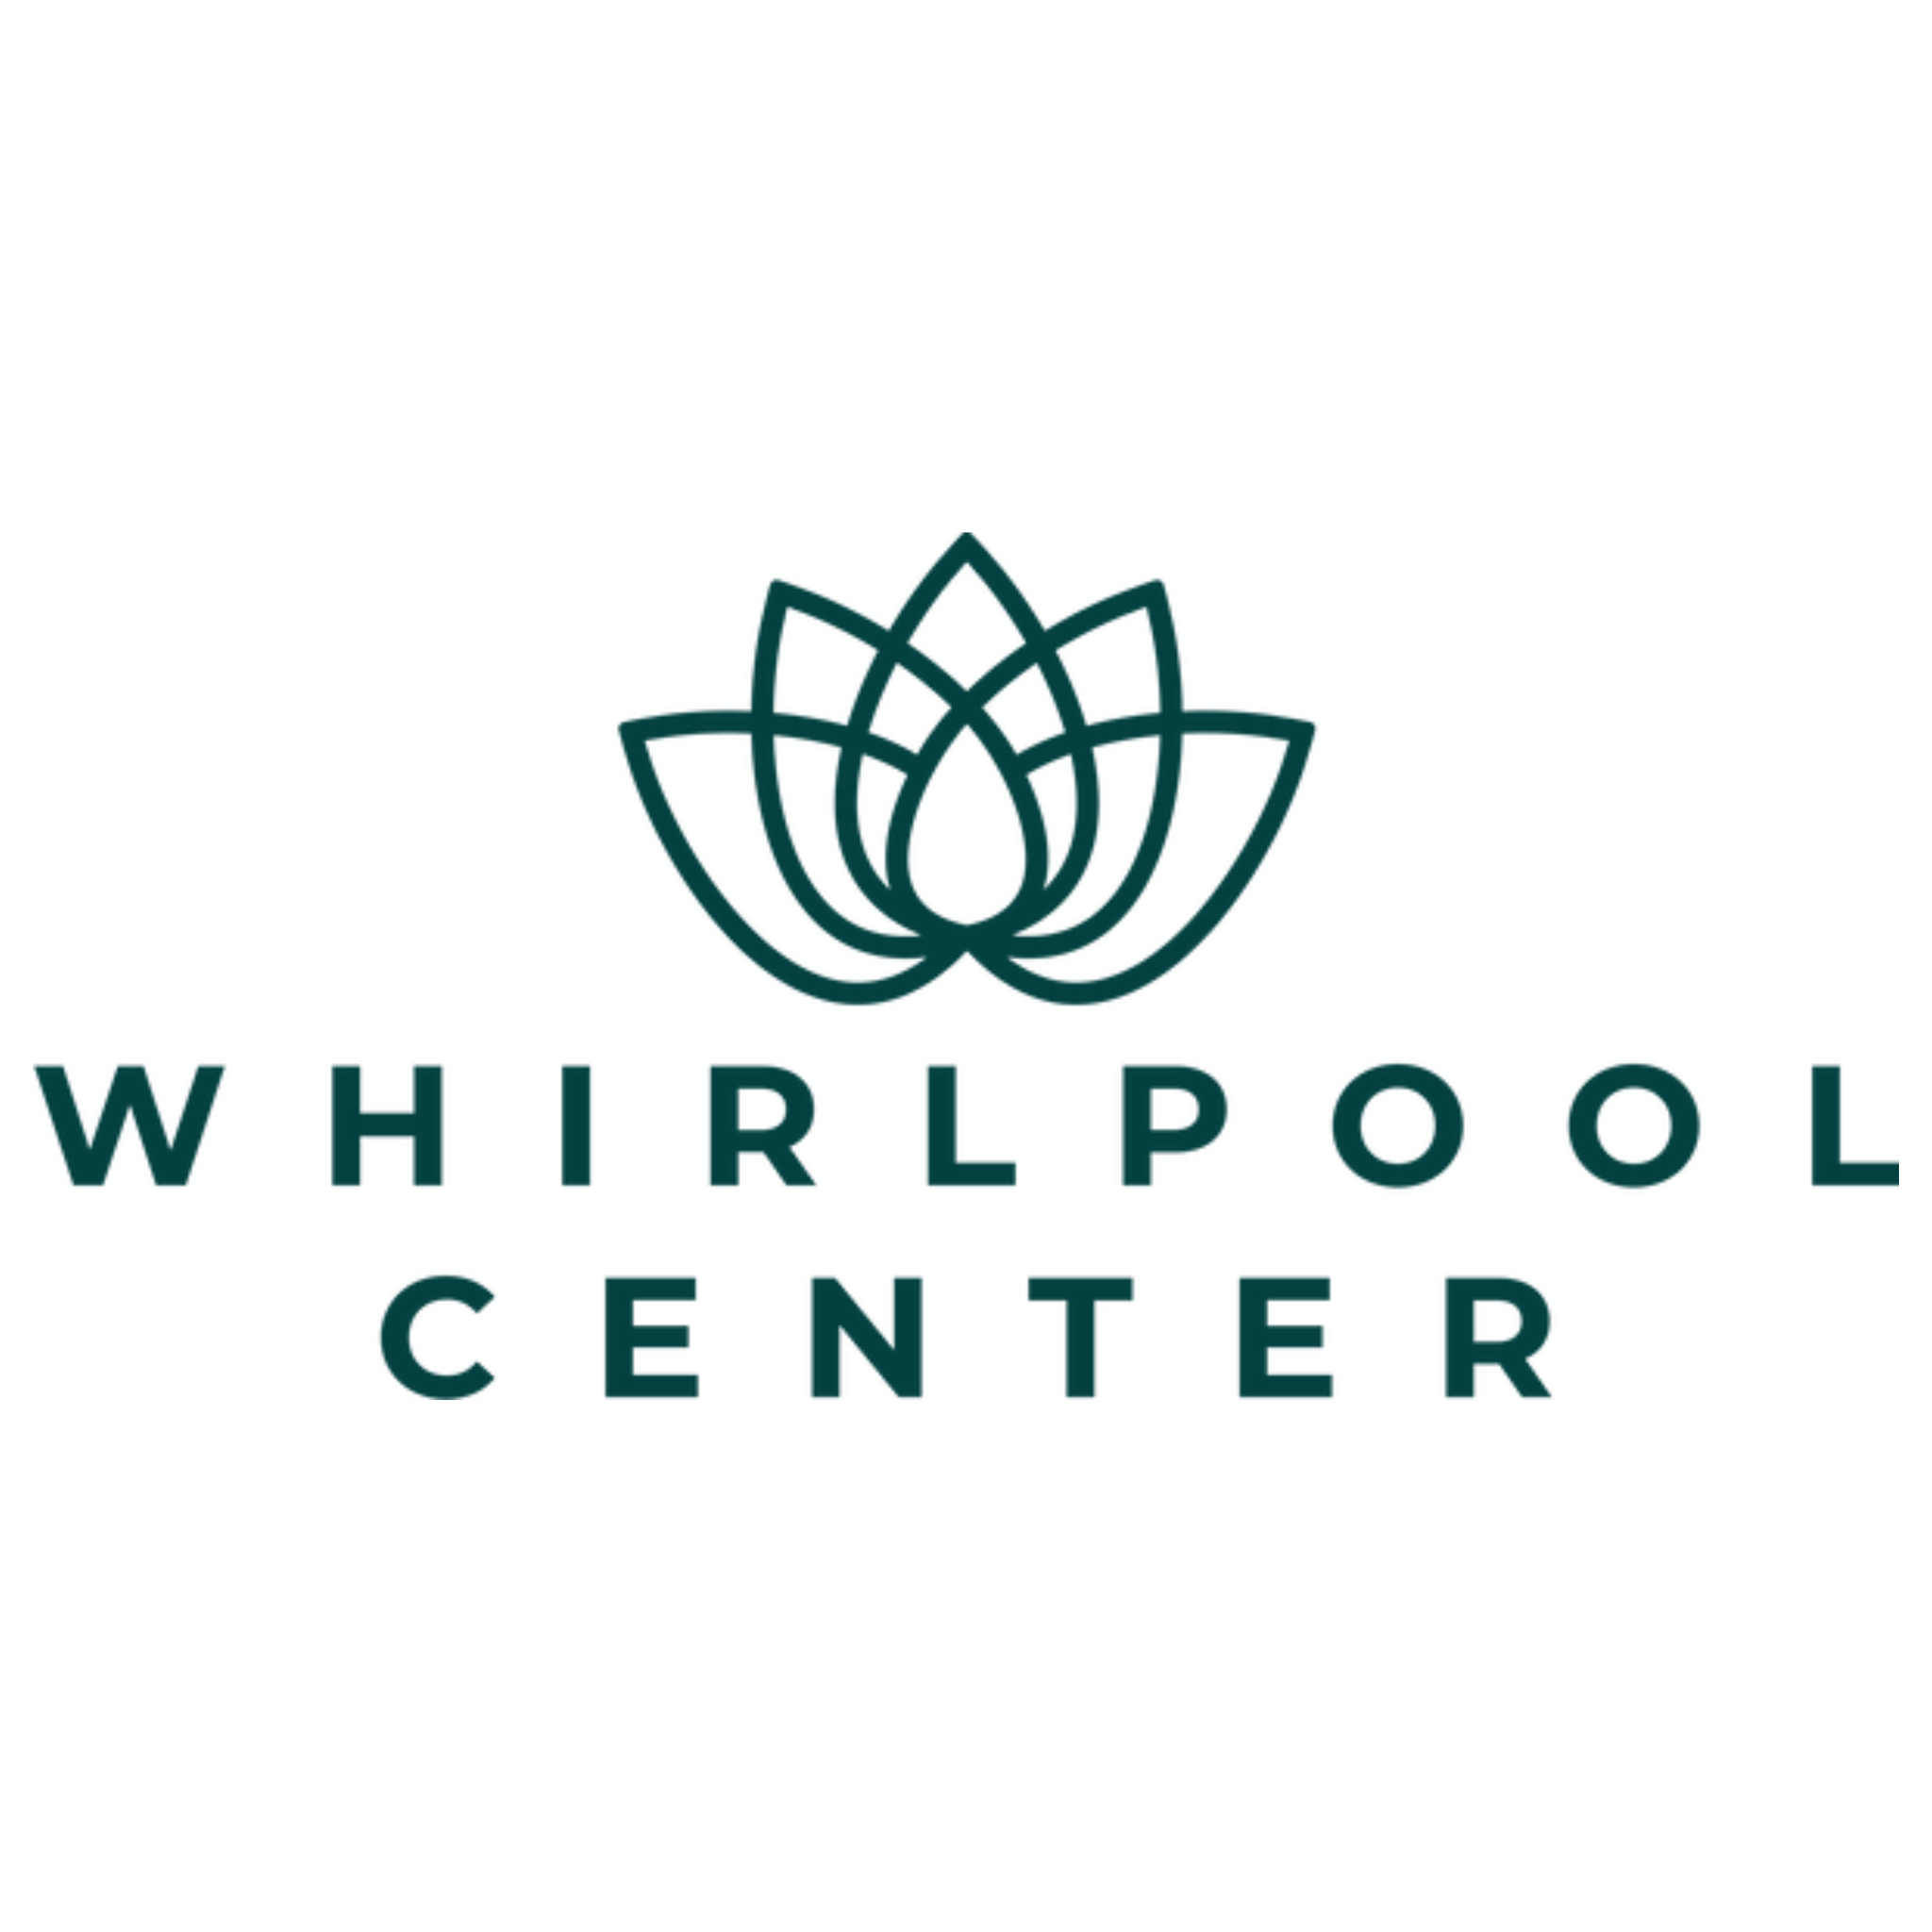 Whirlpool Center in Bad Heilbrunn - Logo